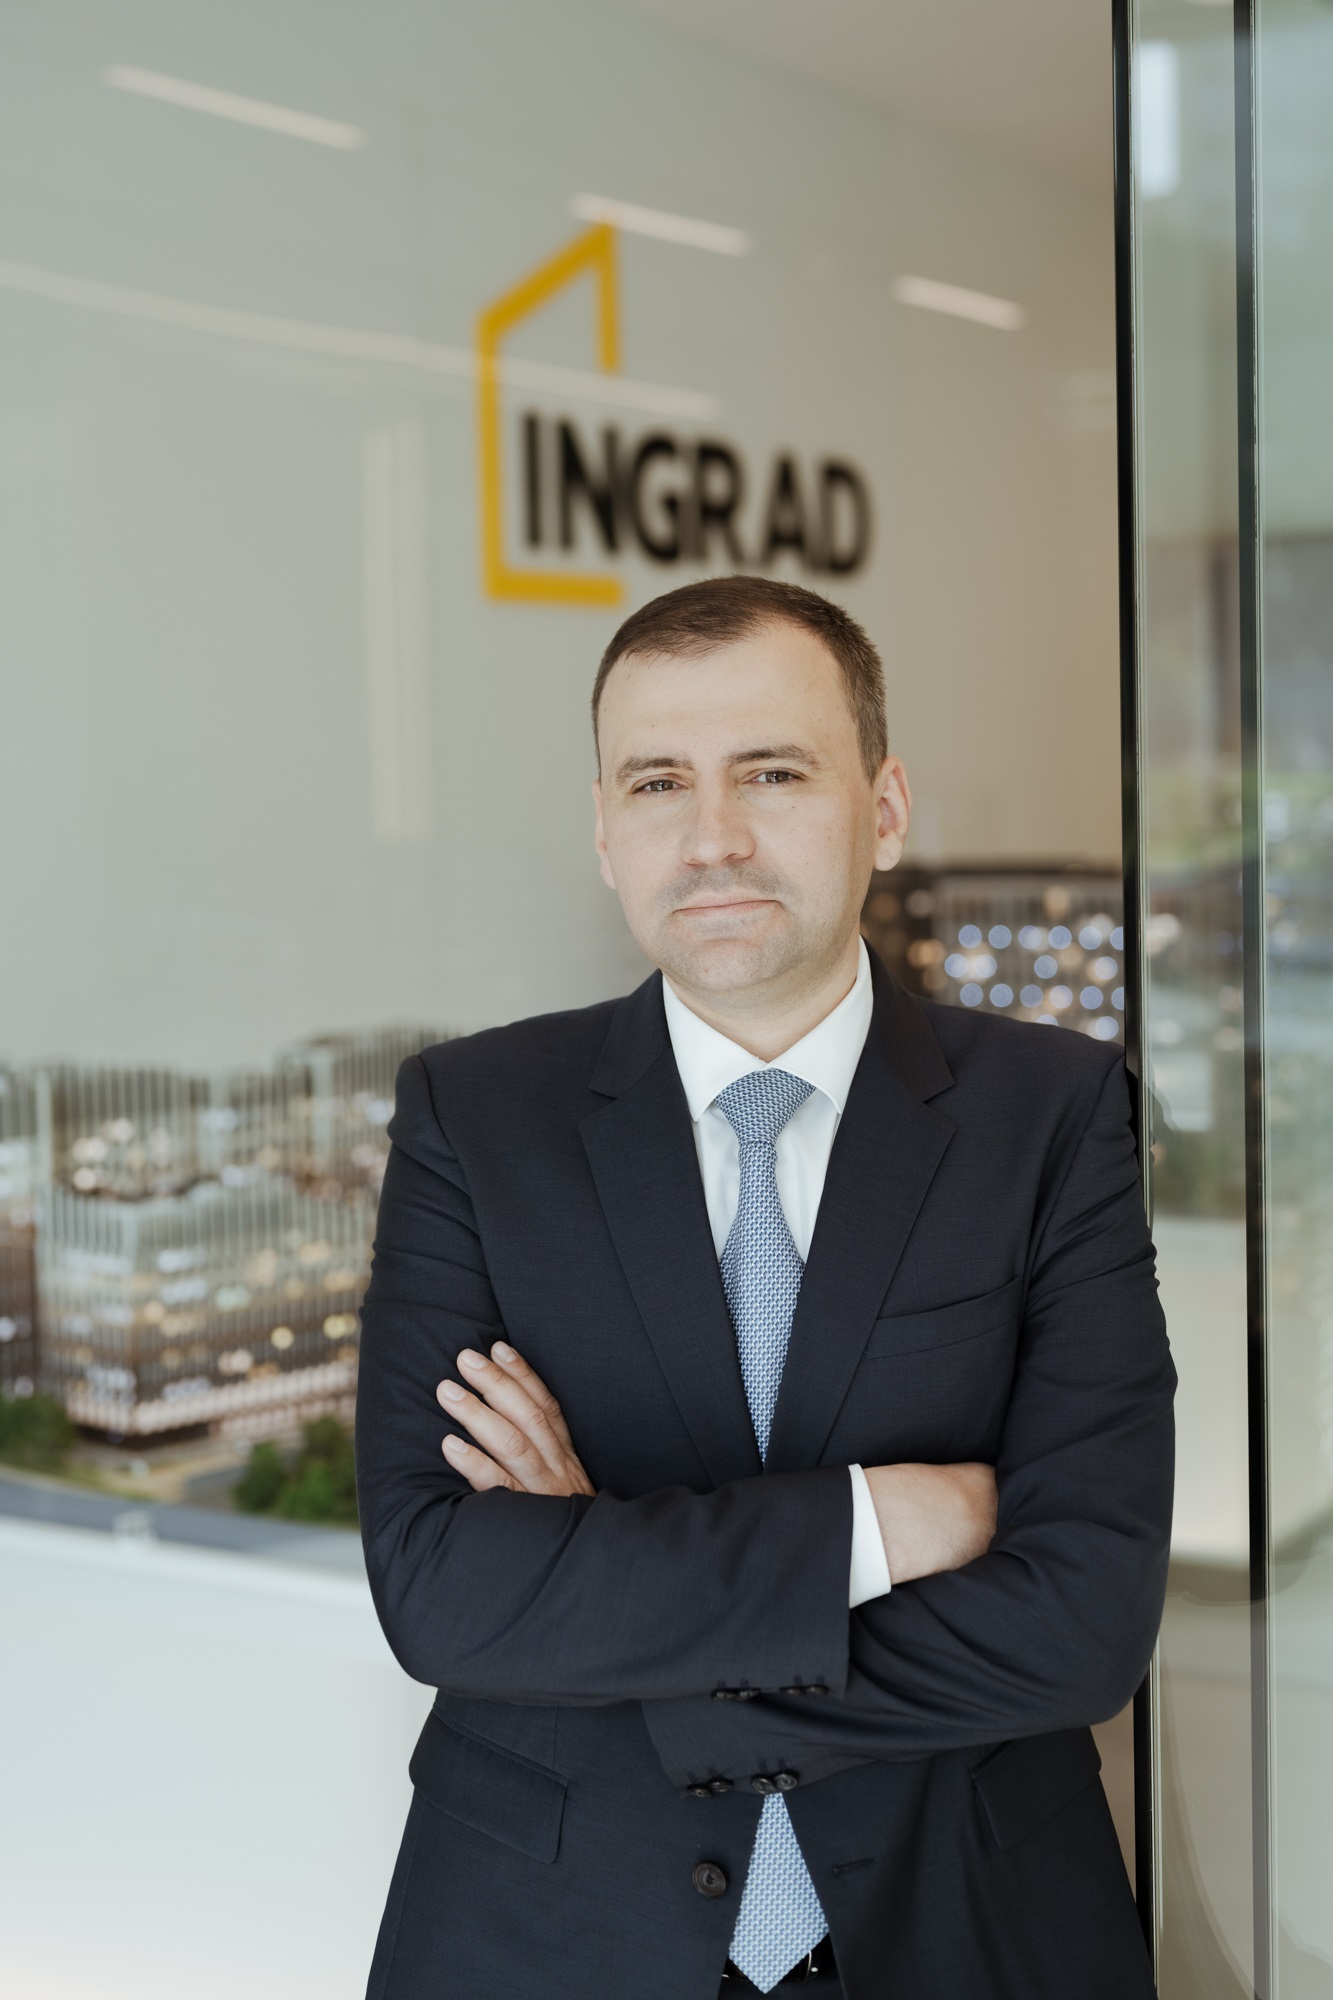 Развитие цифровой ипотеки в России существенно поддерживает строительную отрасль – вице-президент INGRAD